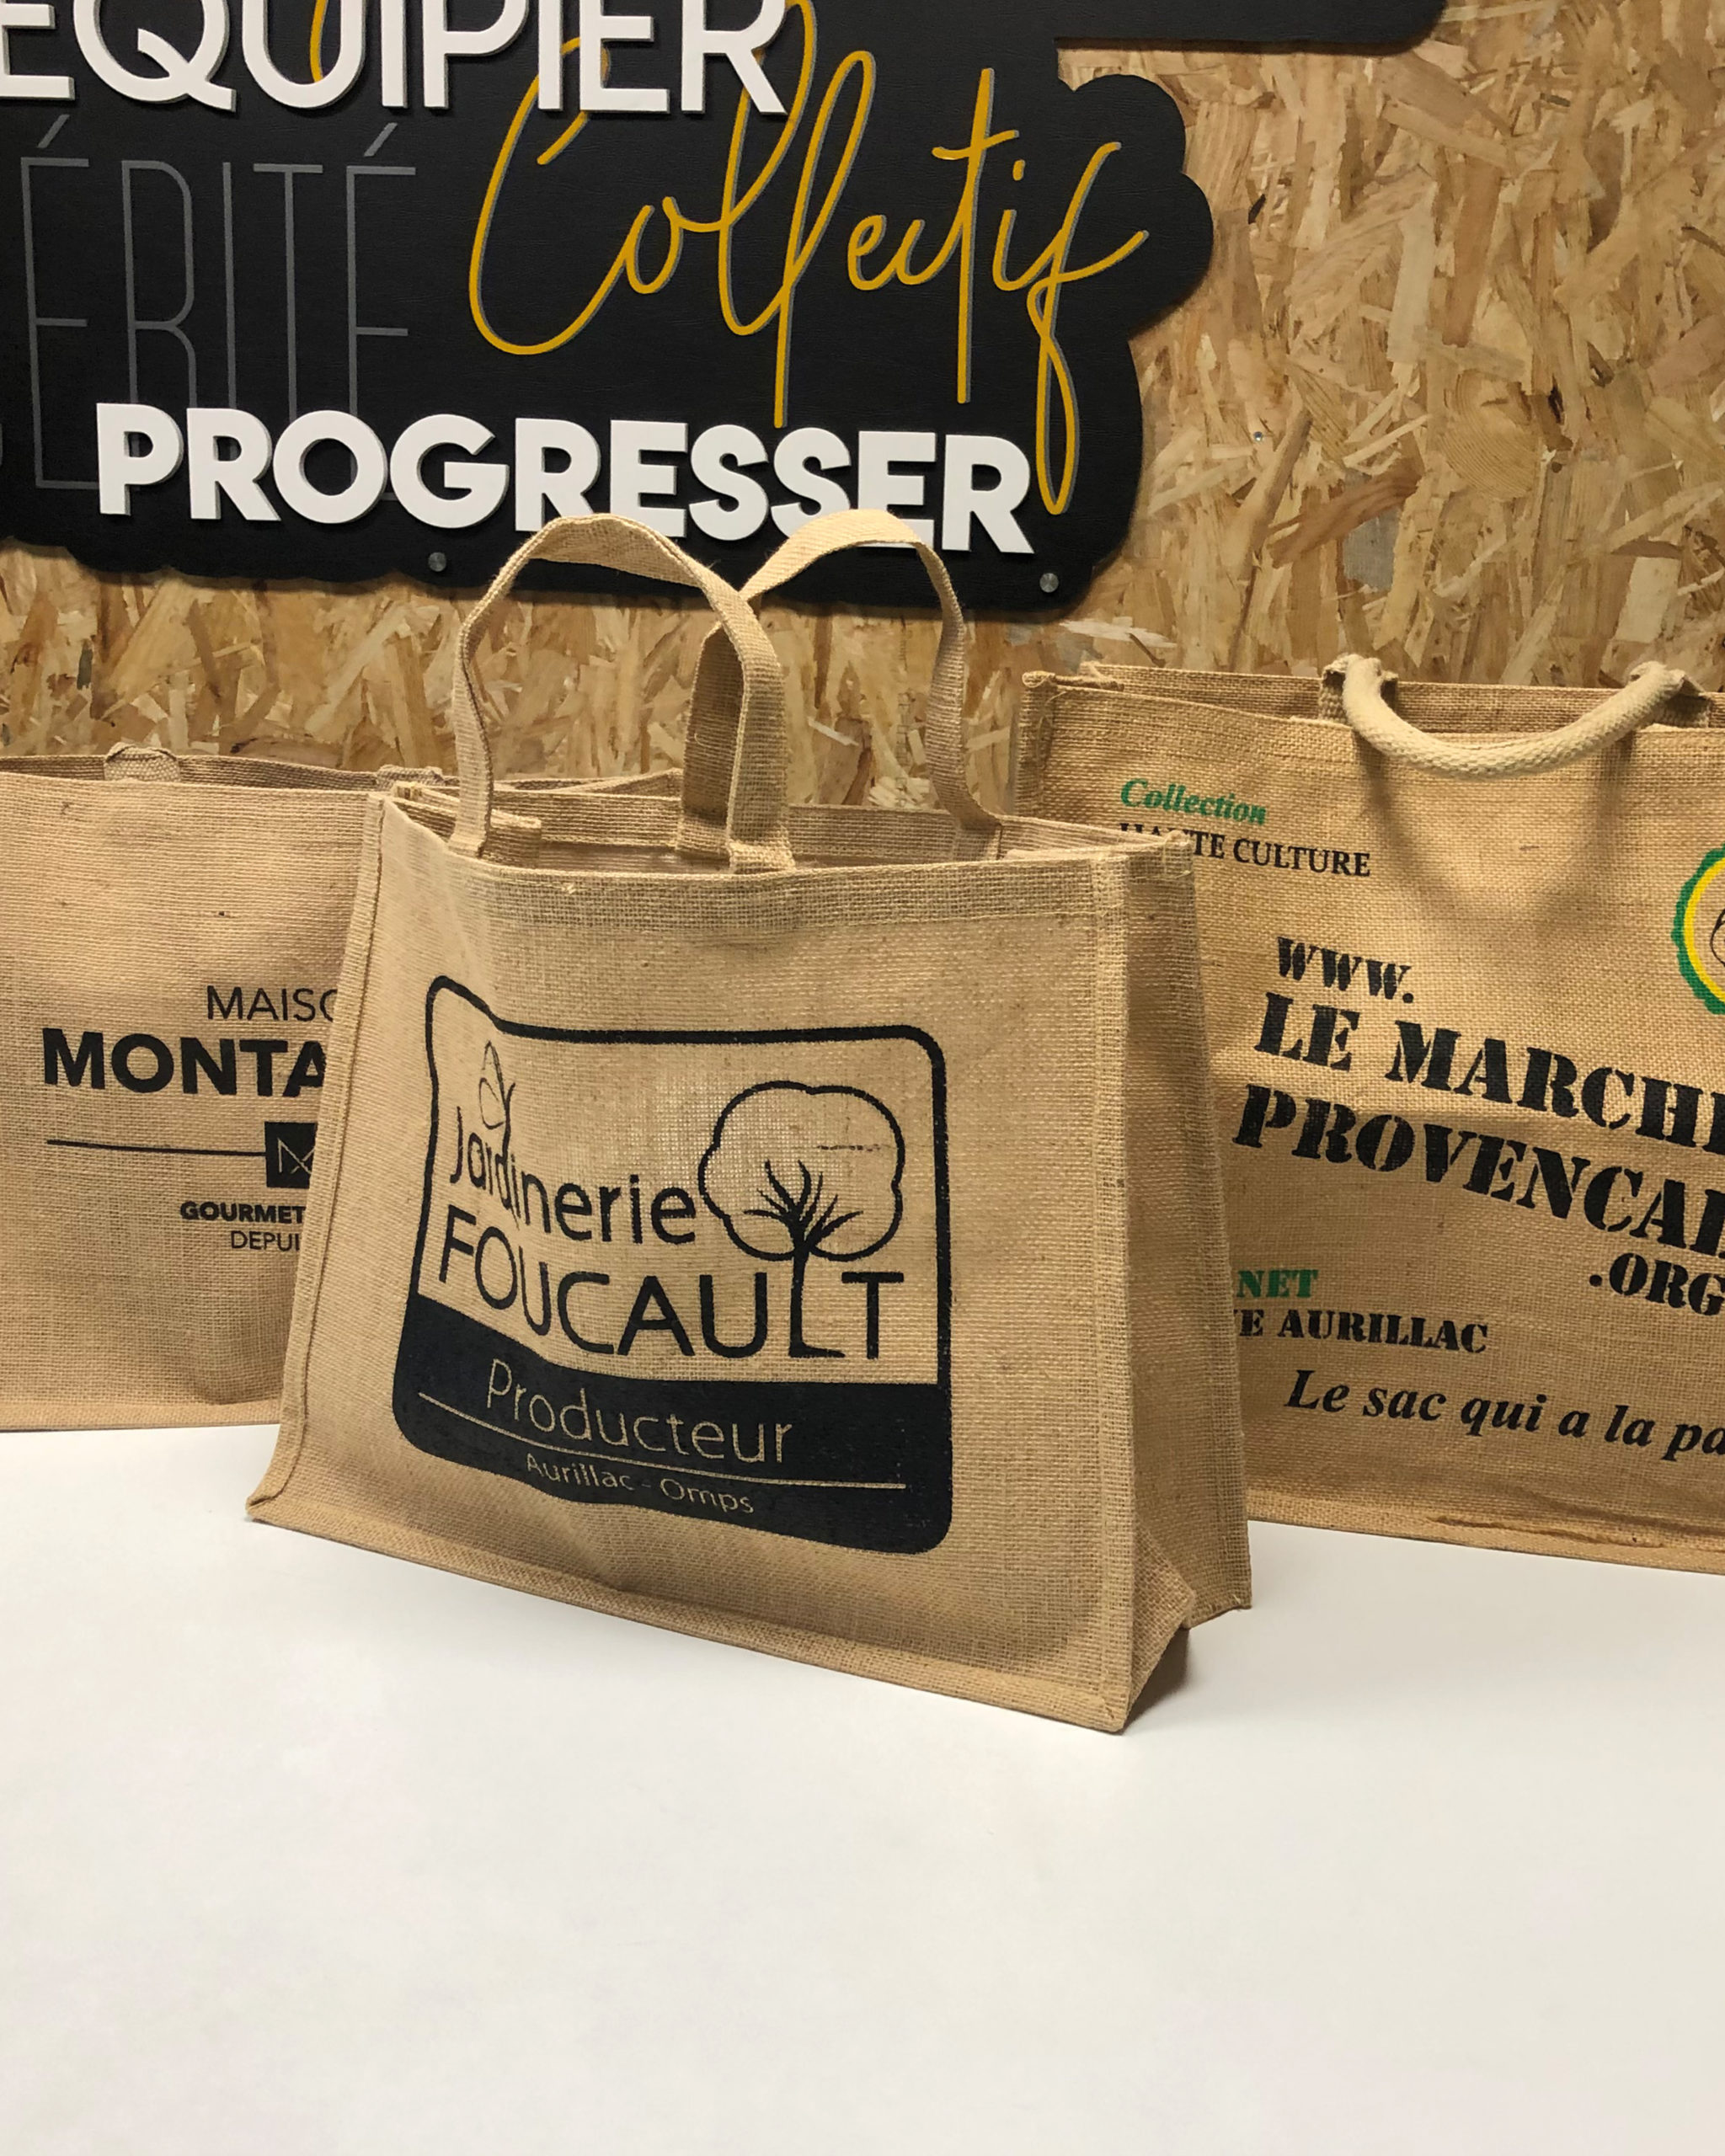 Sacs Jardinerie Foucault - Maison Montarnal - Marché Provencale